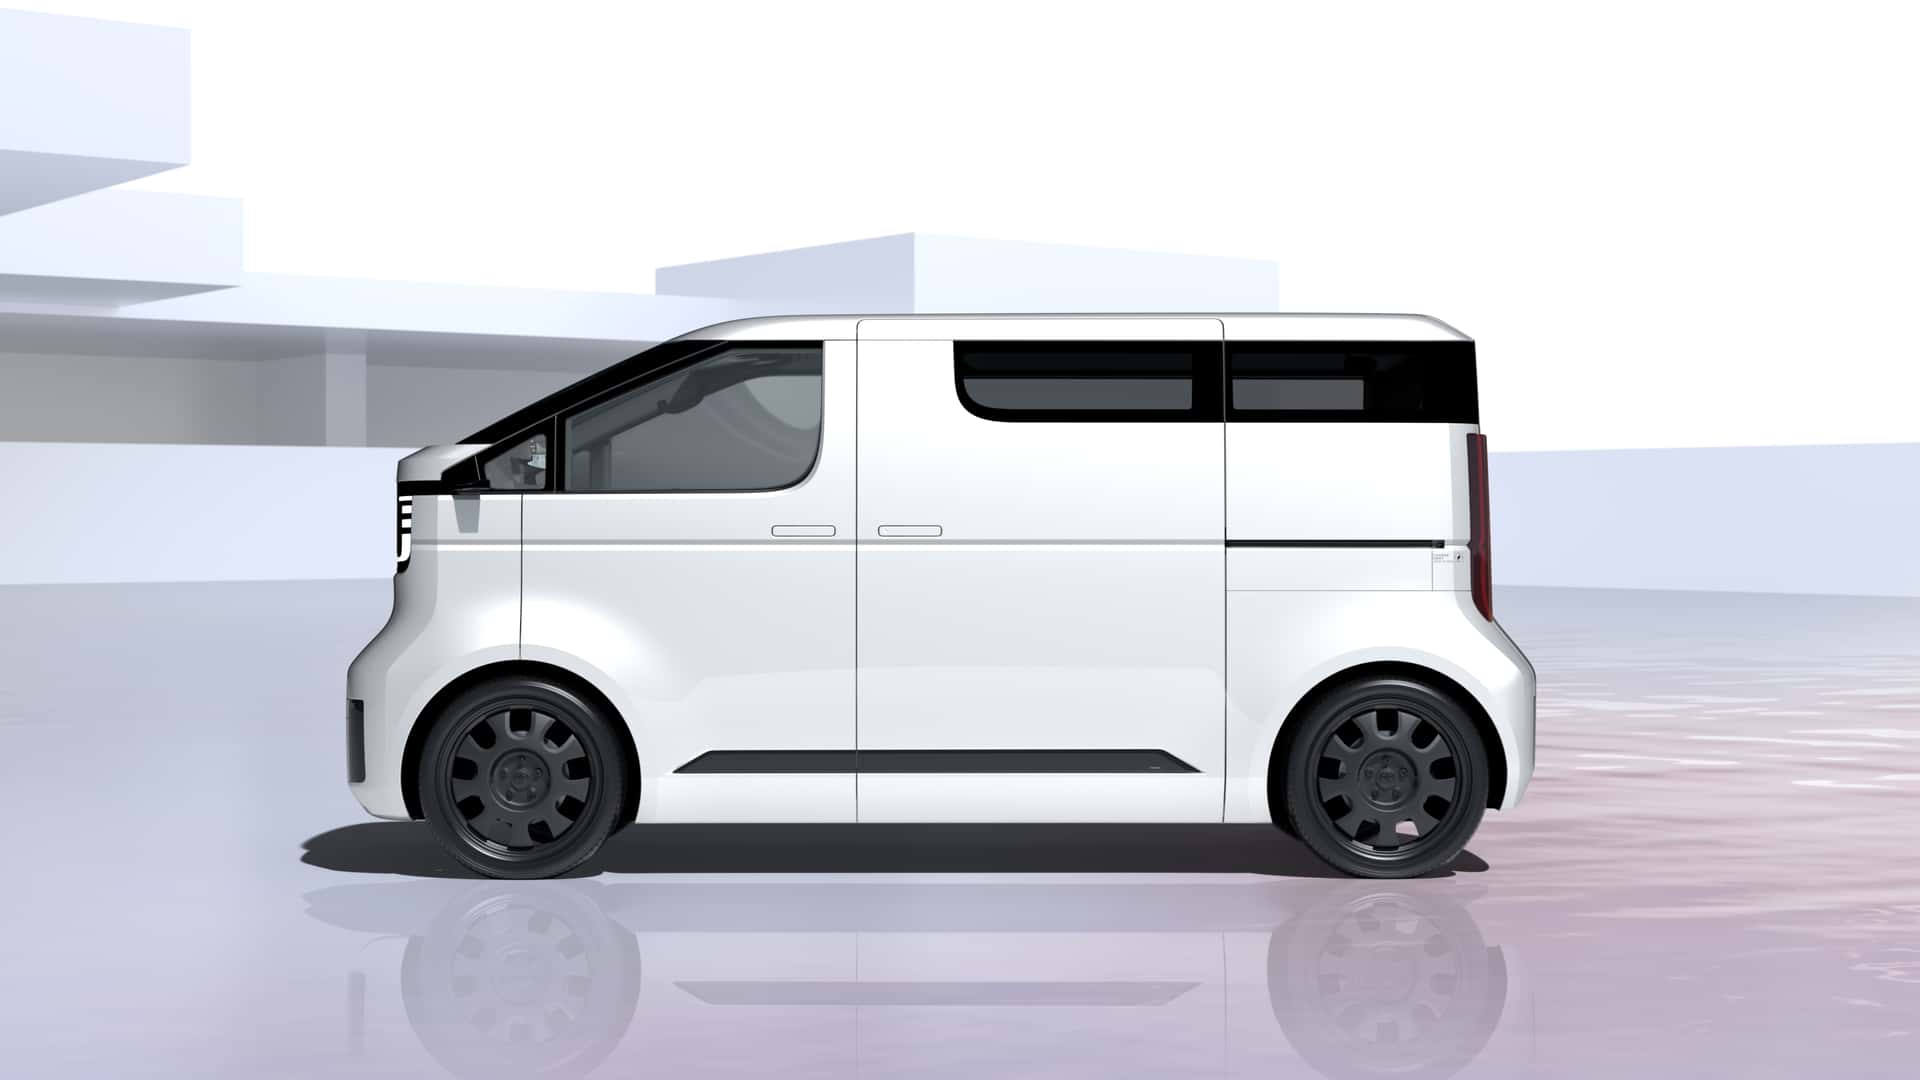 toyota kayoibako ev minivan doubles as cargo hauler or mobile shop